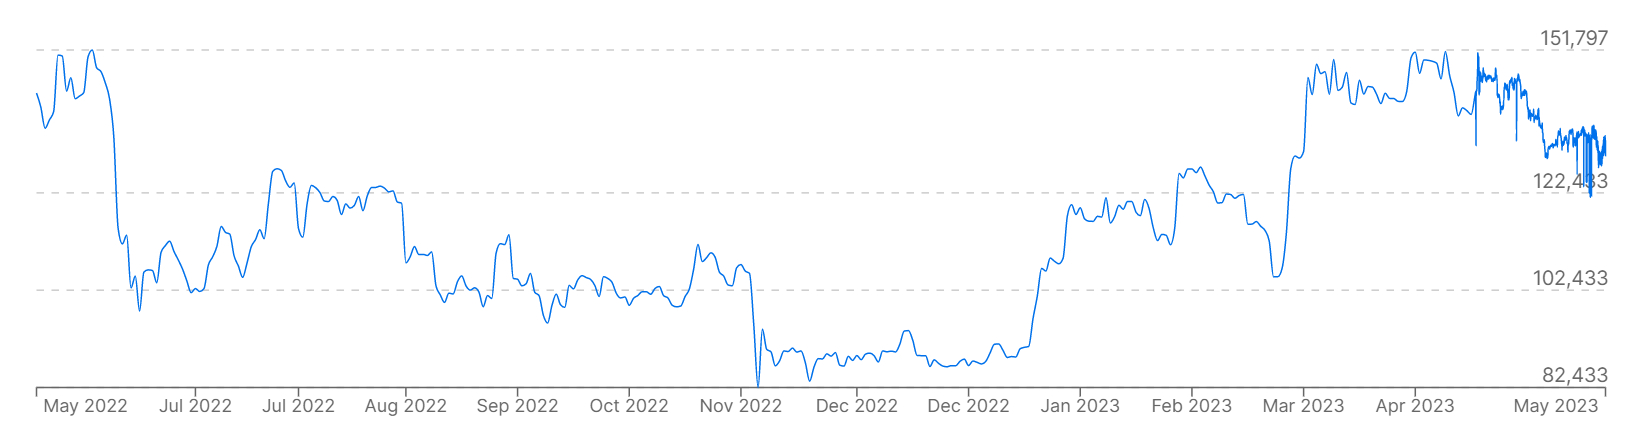 Un gráfico que muestra los precios de bitcoins frente al real brasileño durante los últimos 12 meses.